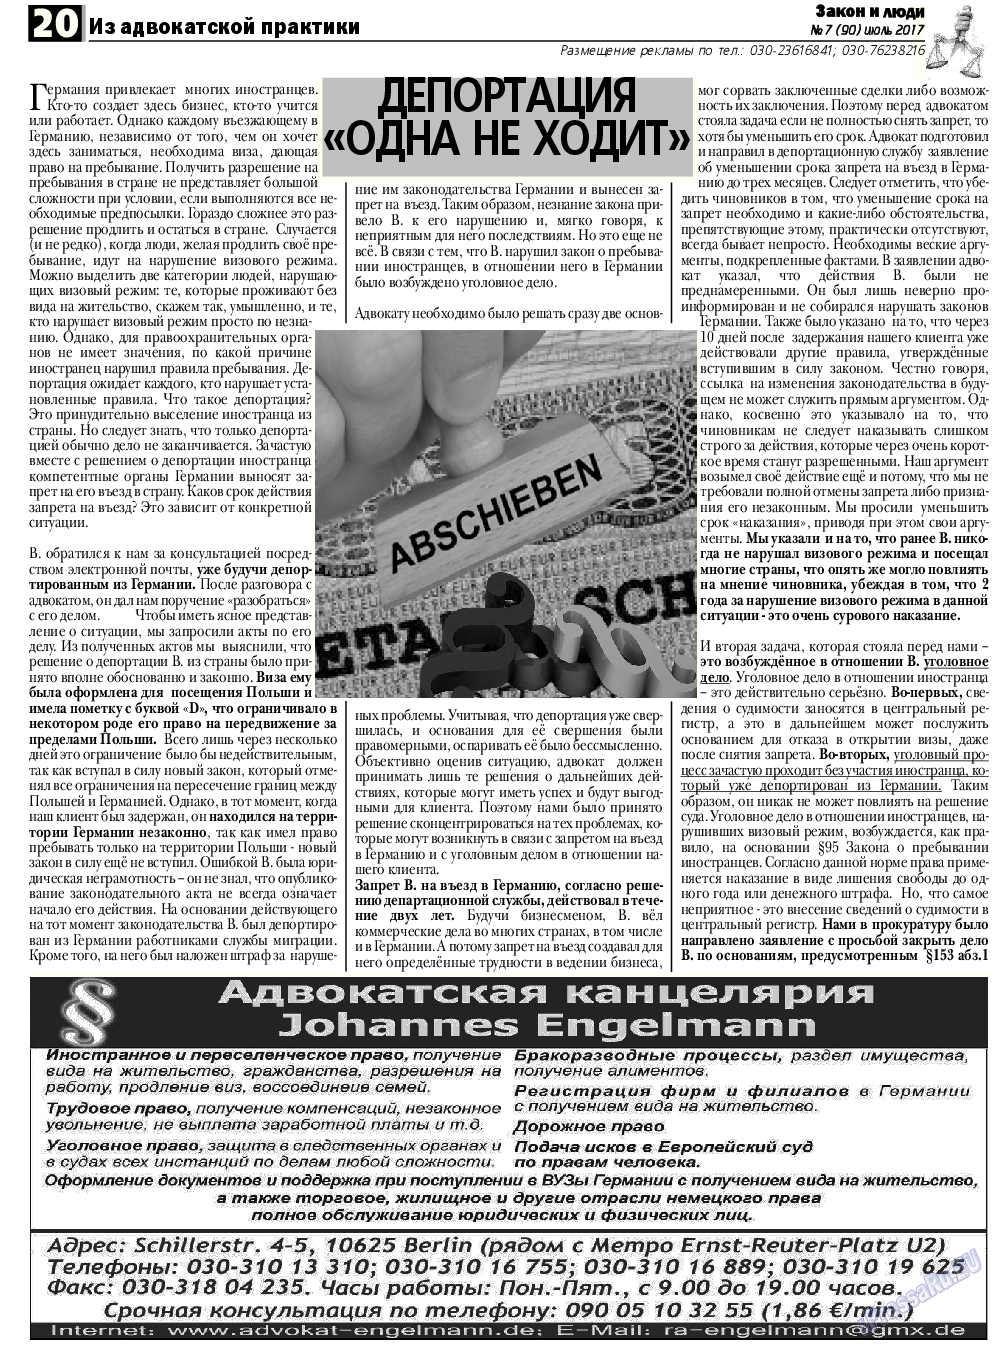 Закон и люди, газета. 2017 №7 стр.20